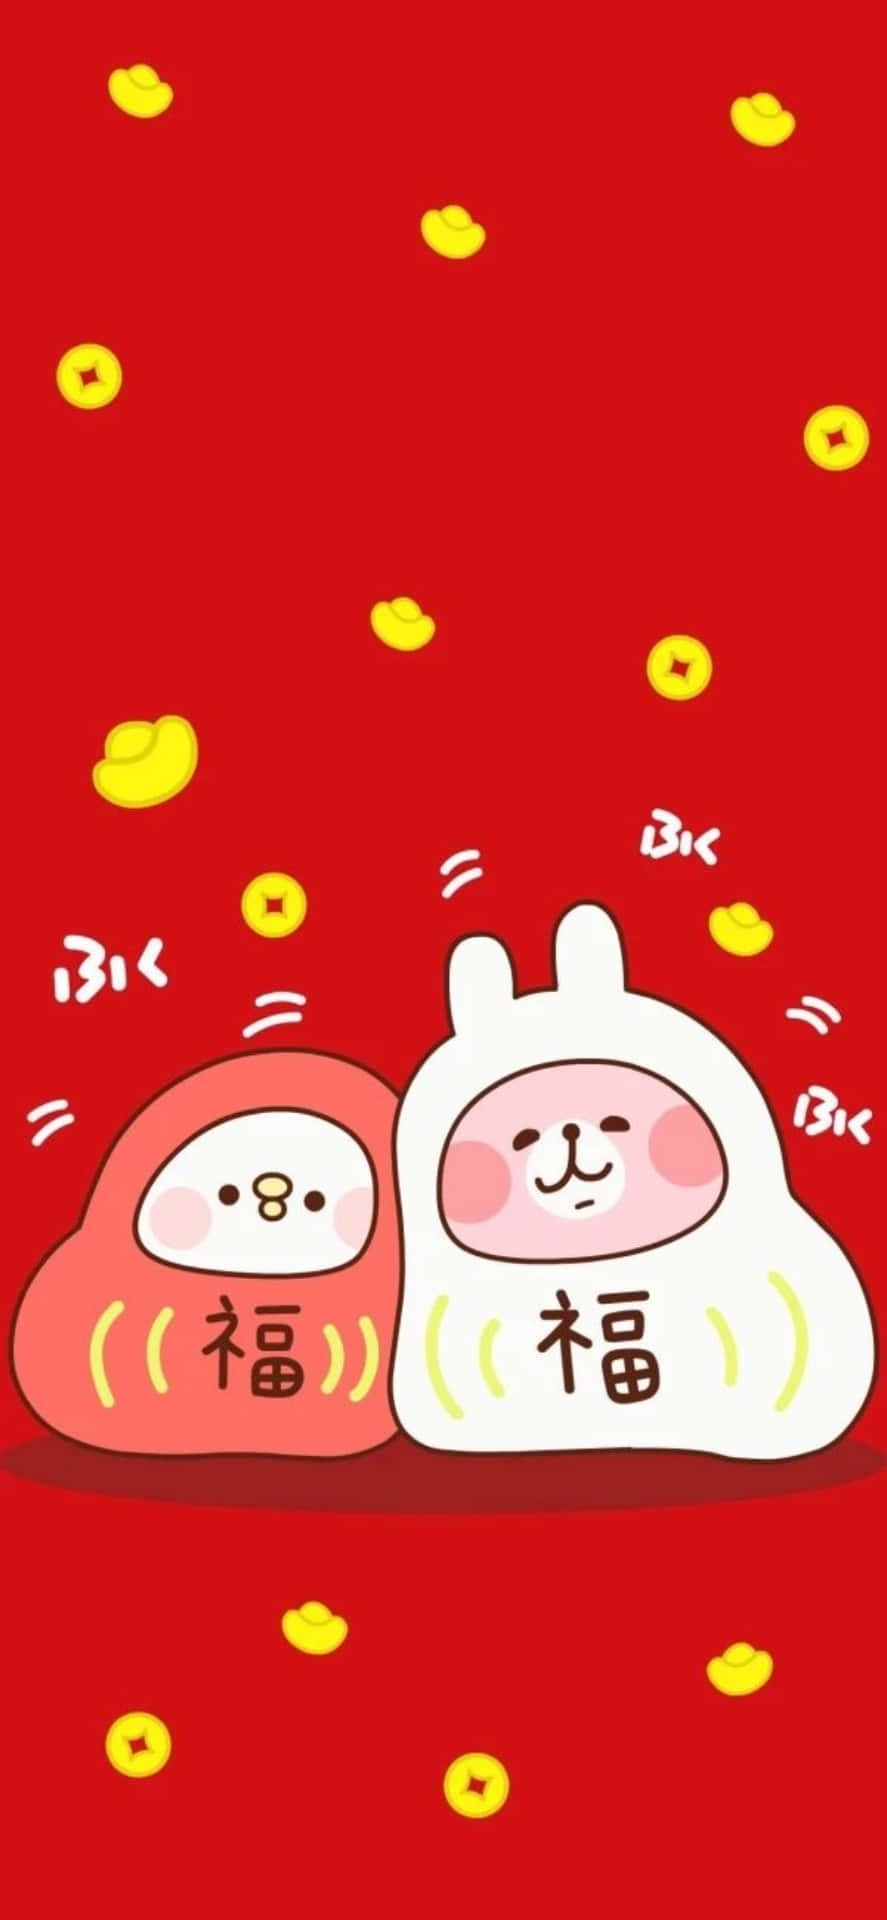 Wallpaper!fira Kinesiskt Nyår Med En Ny Iphone-bakgrundsbild! Wallpaper